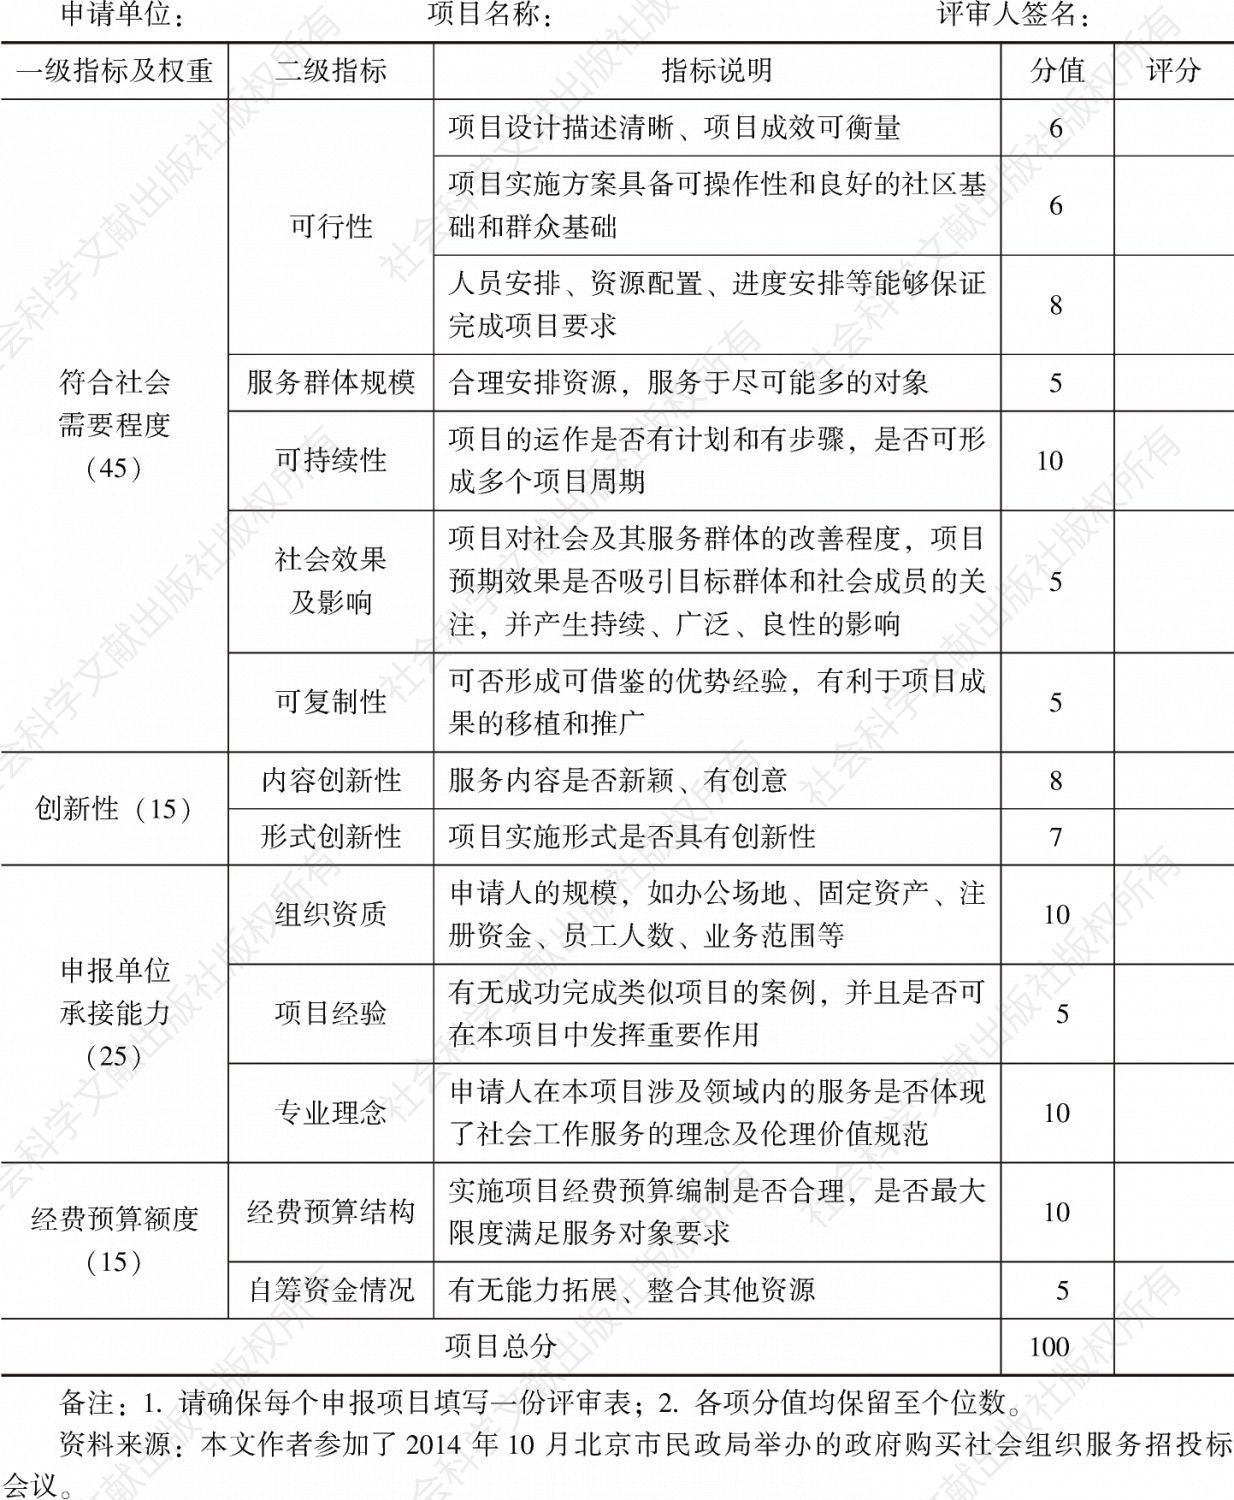 表2 北京市救助管理事务中心购买社会组织服务评审表